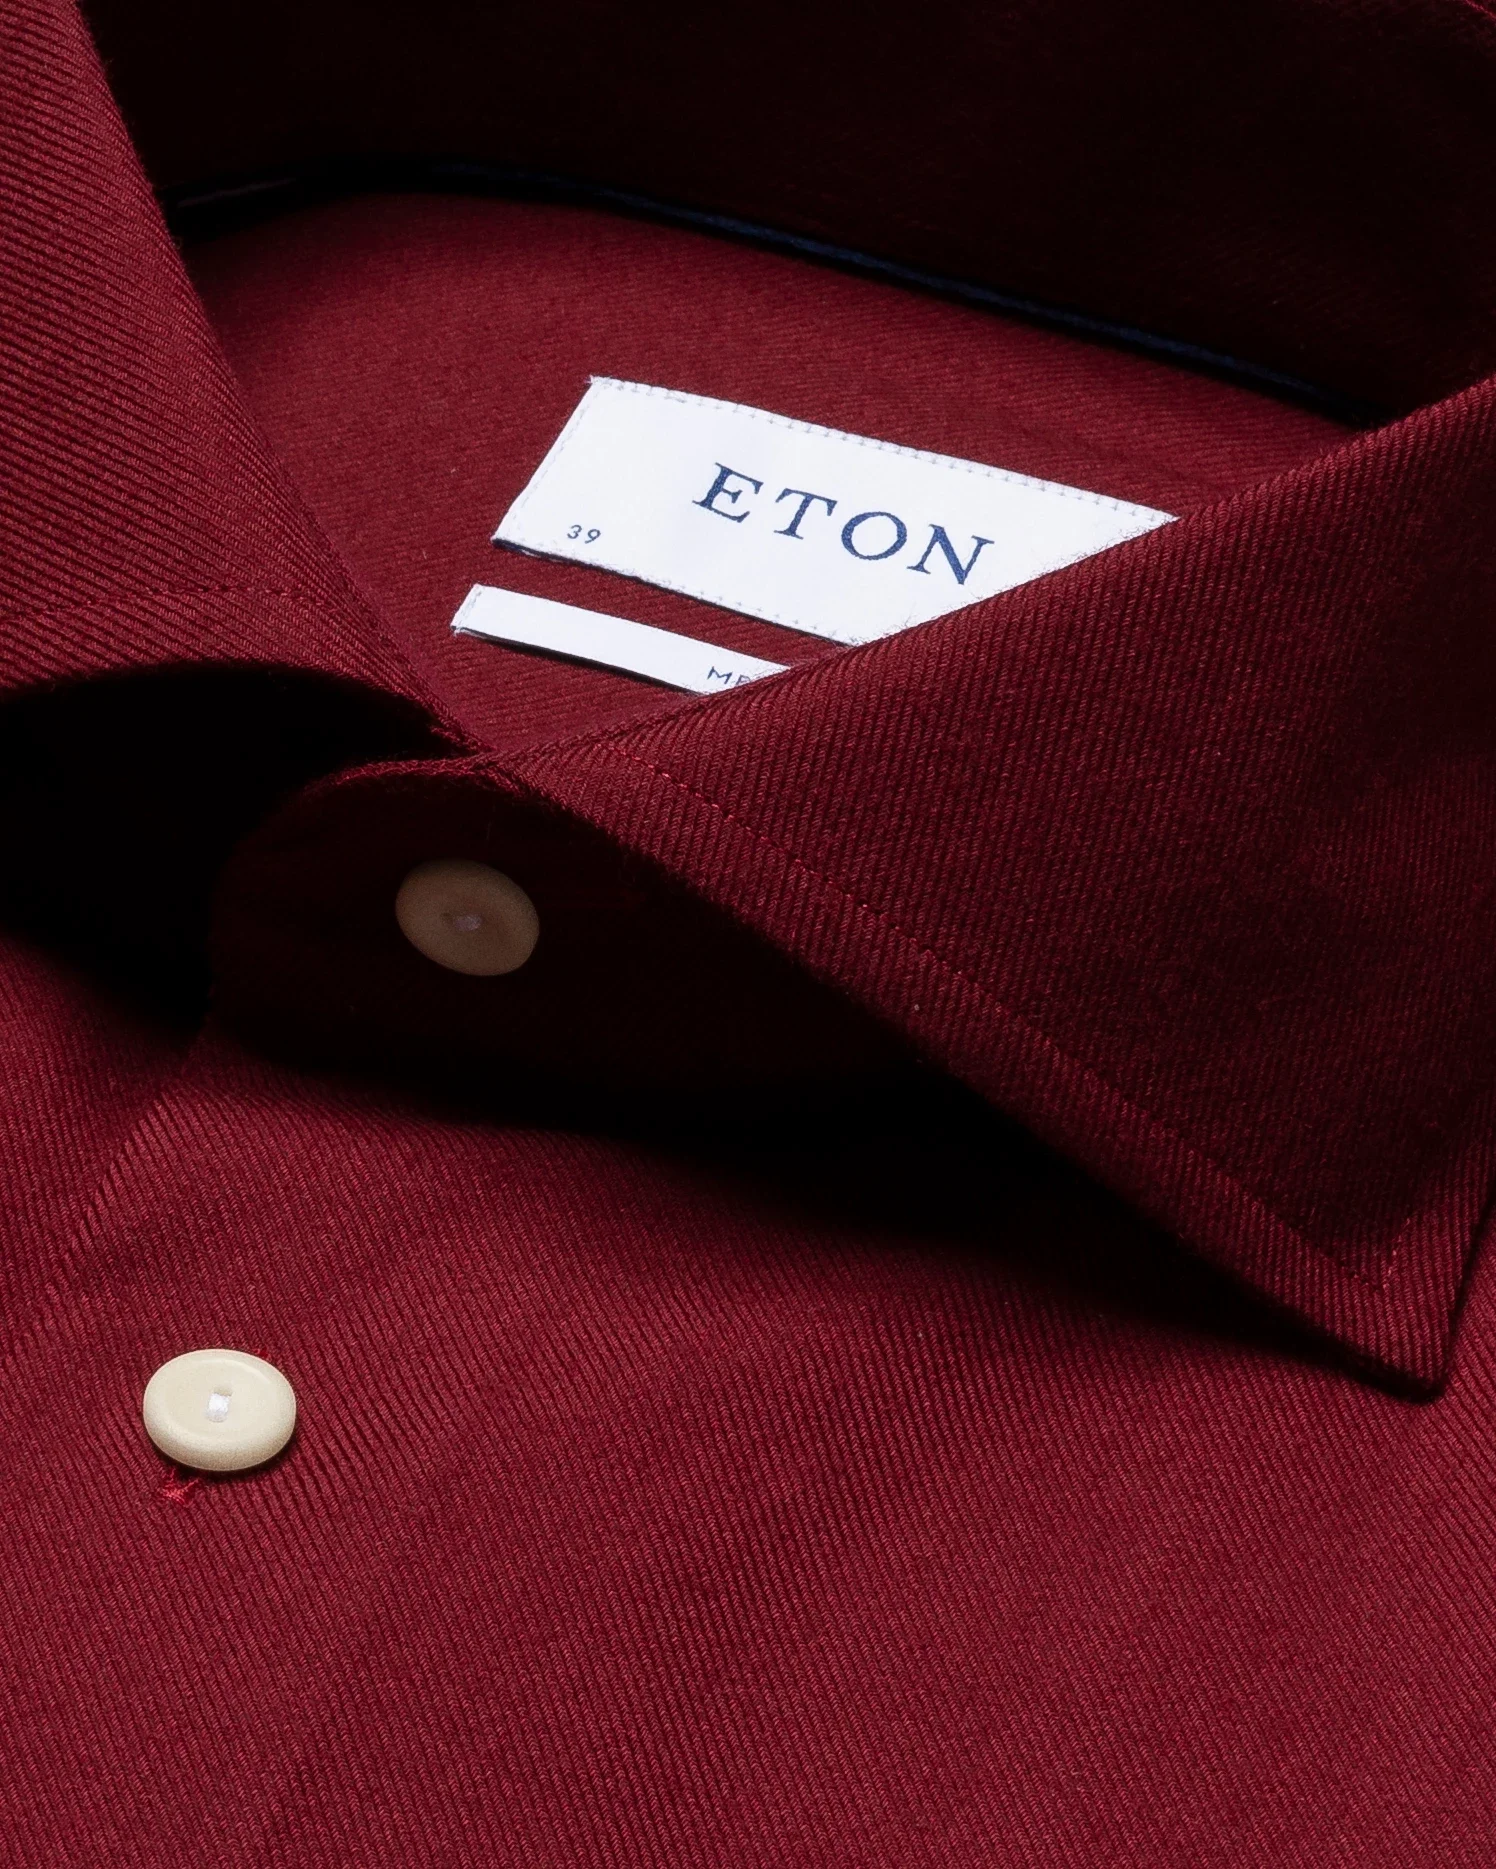 Eton - burgundy brushed merino wool shirt